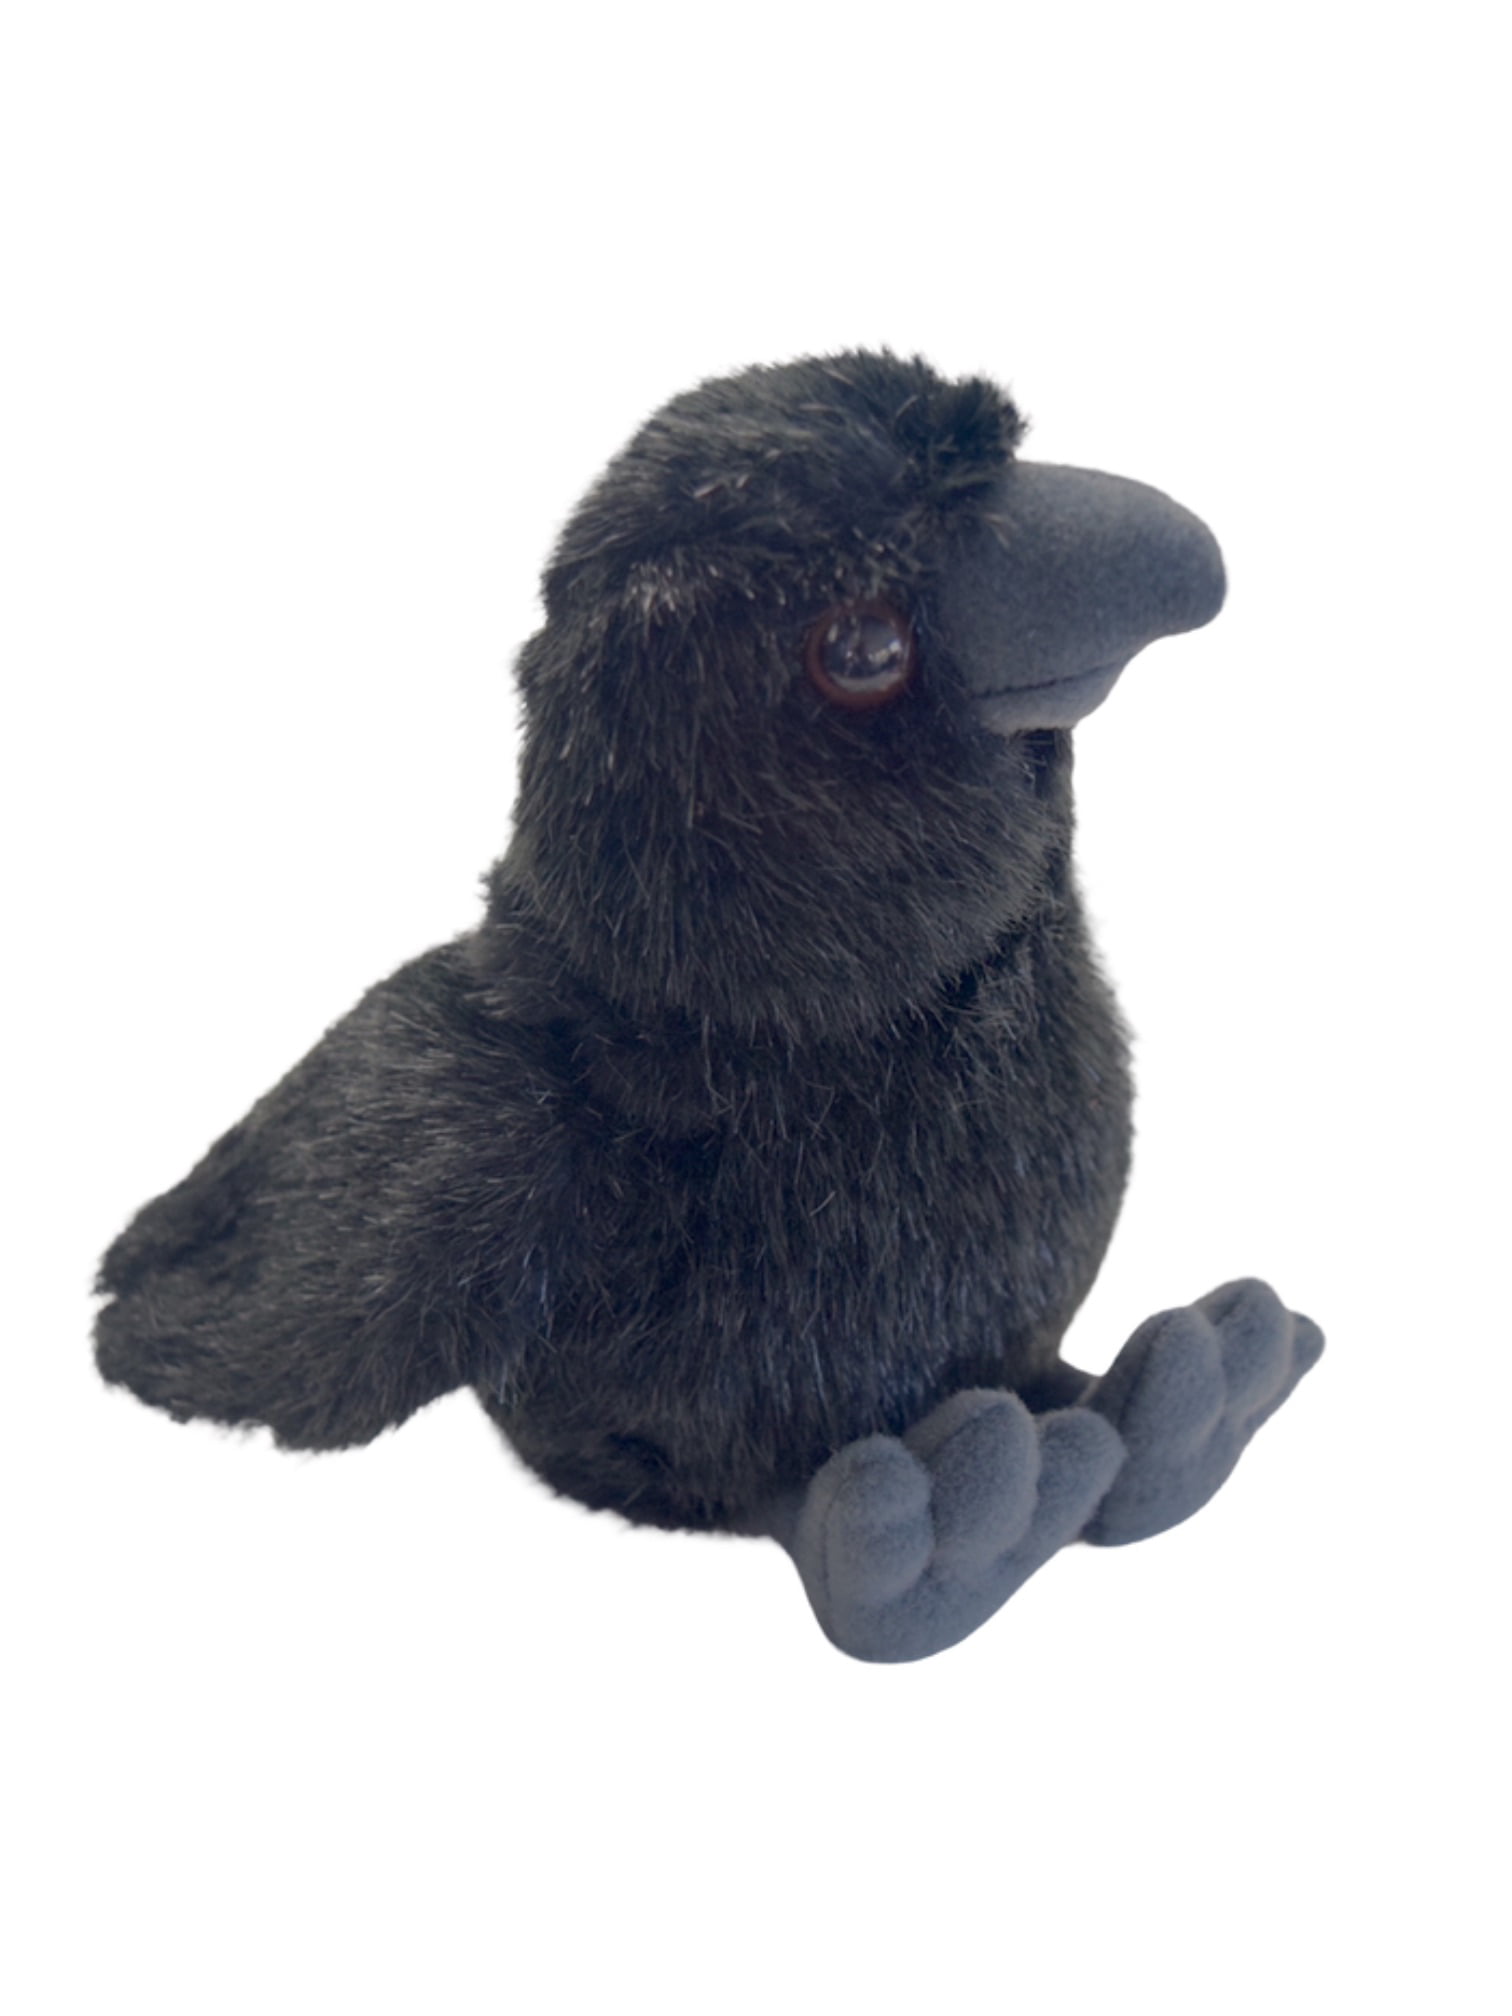 raven stuffed animal